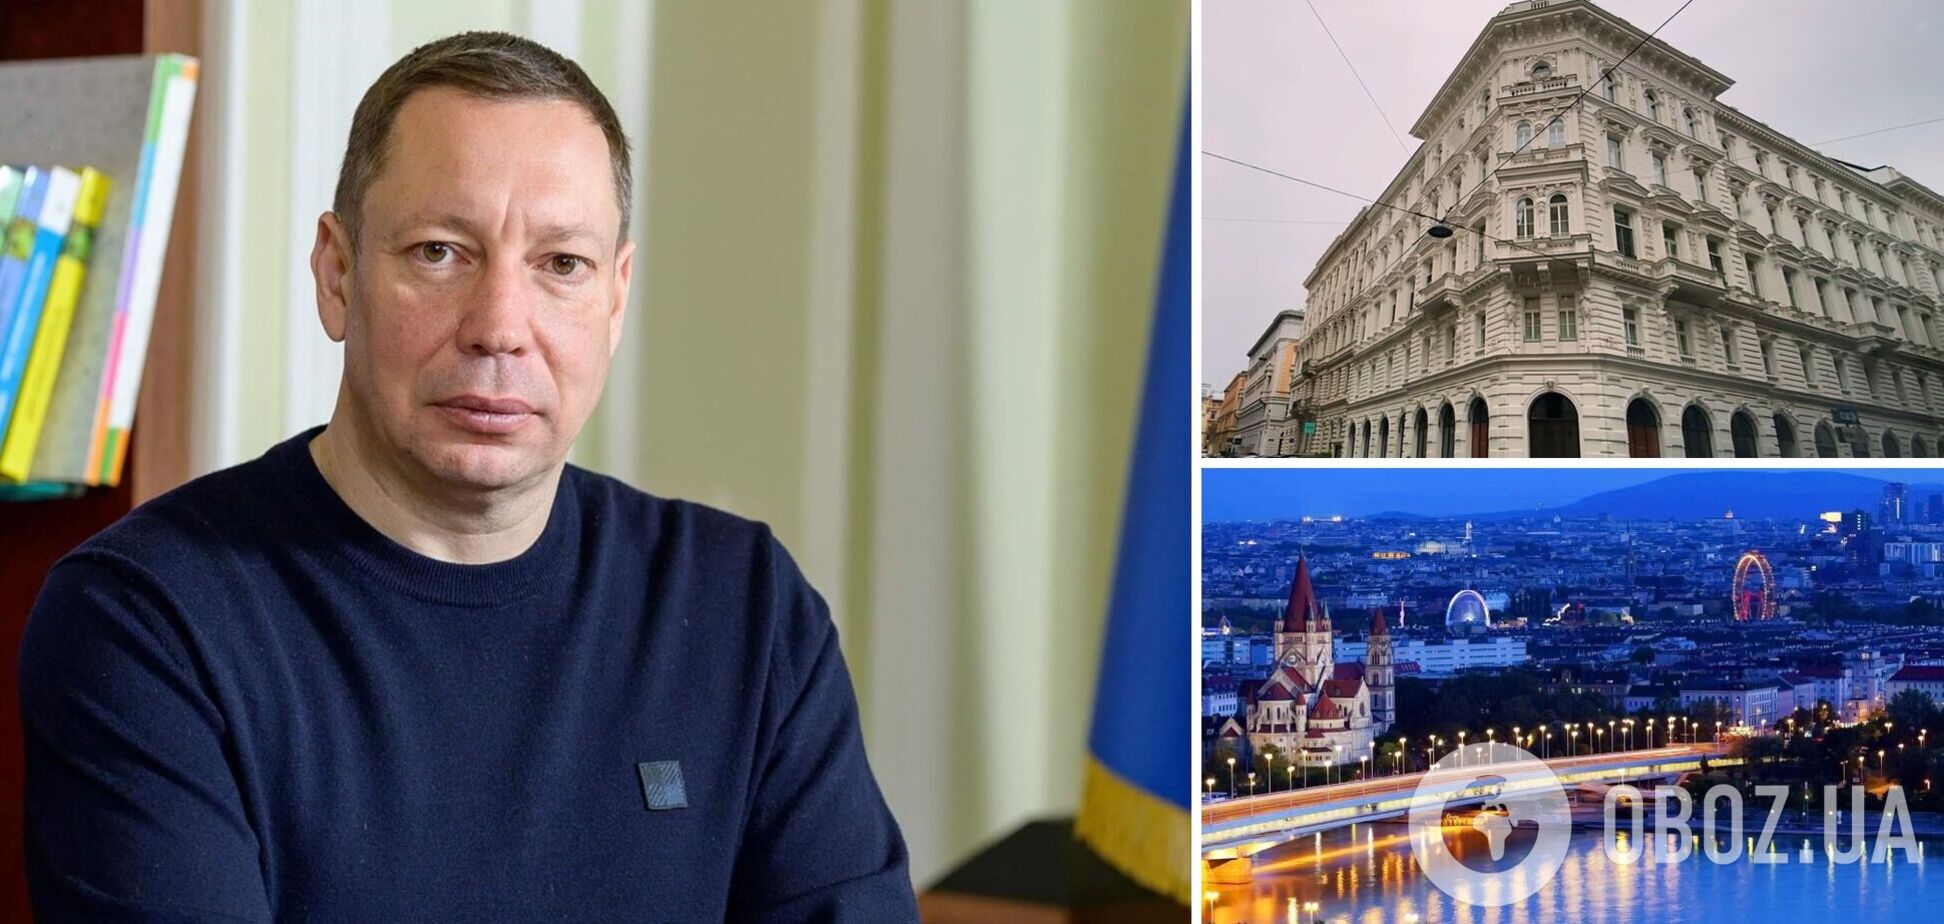 Объявленный в розыск экс-глава НБУ Шевченко находится в Вене: СМИ выяснили детали